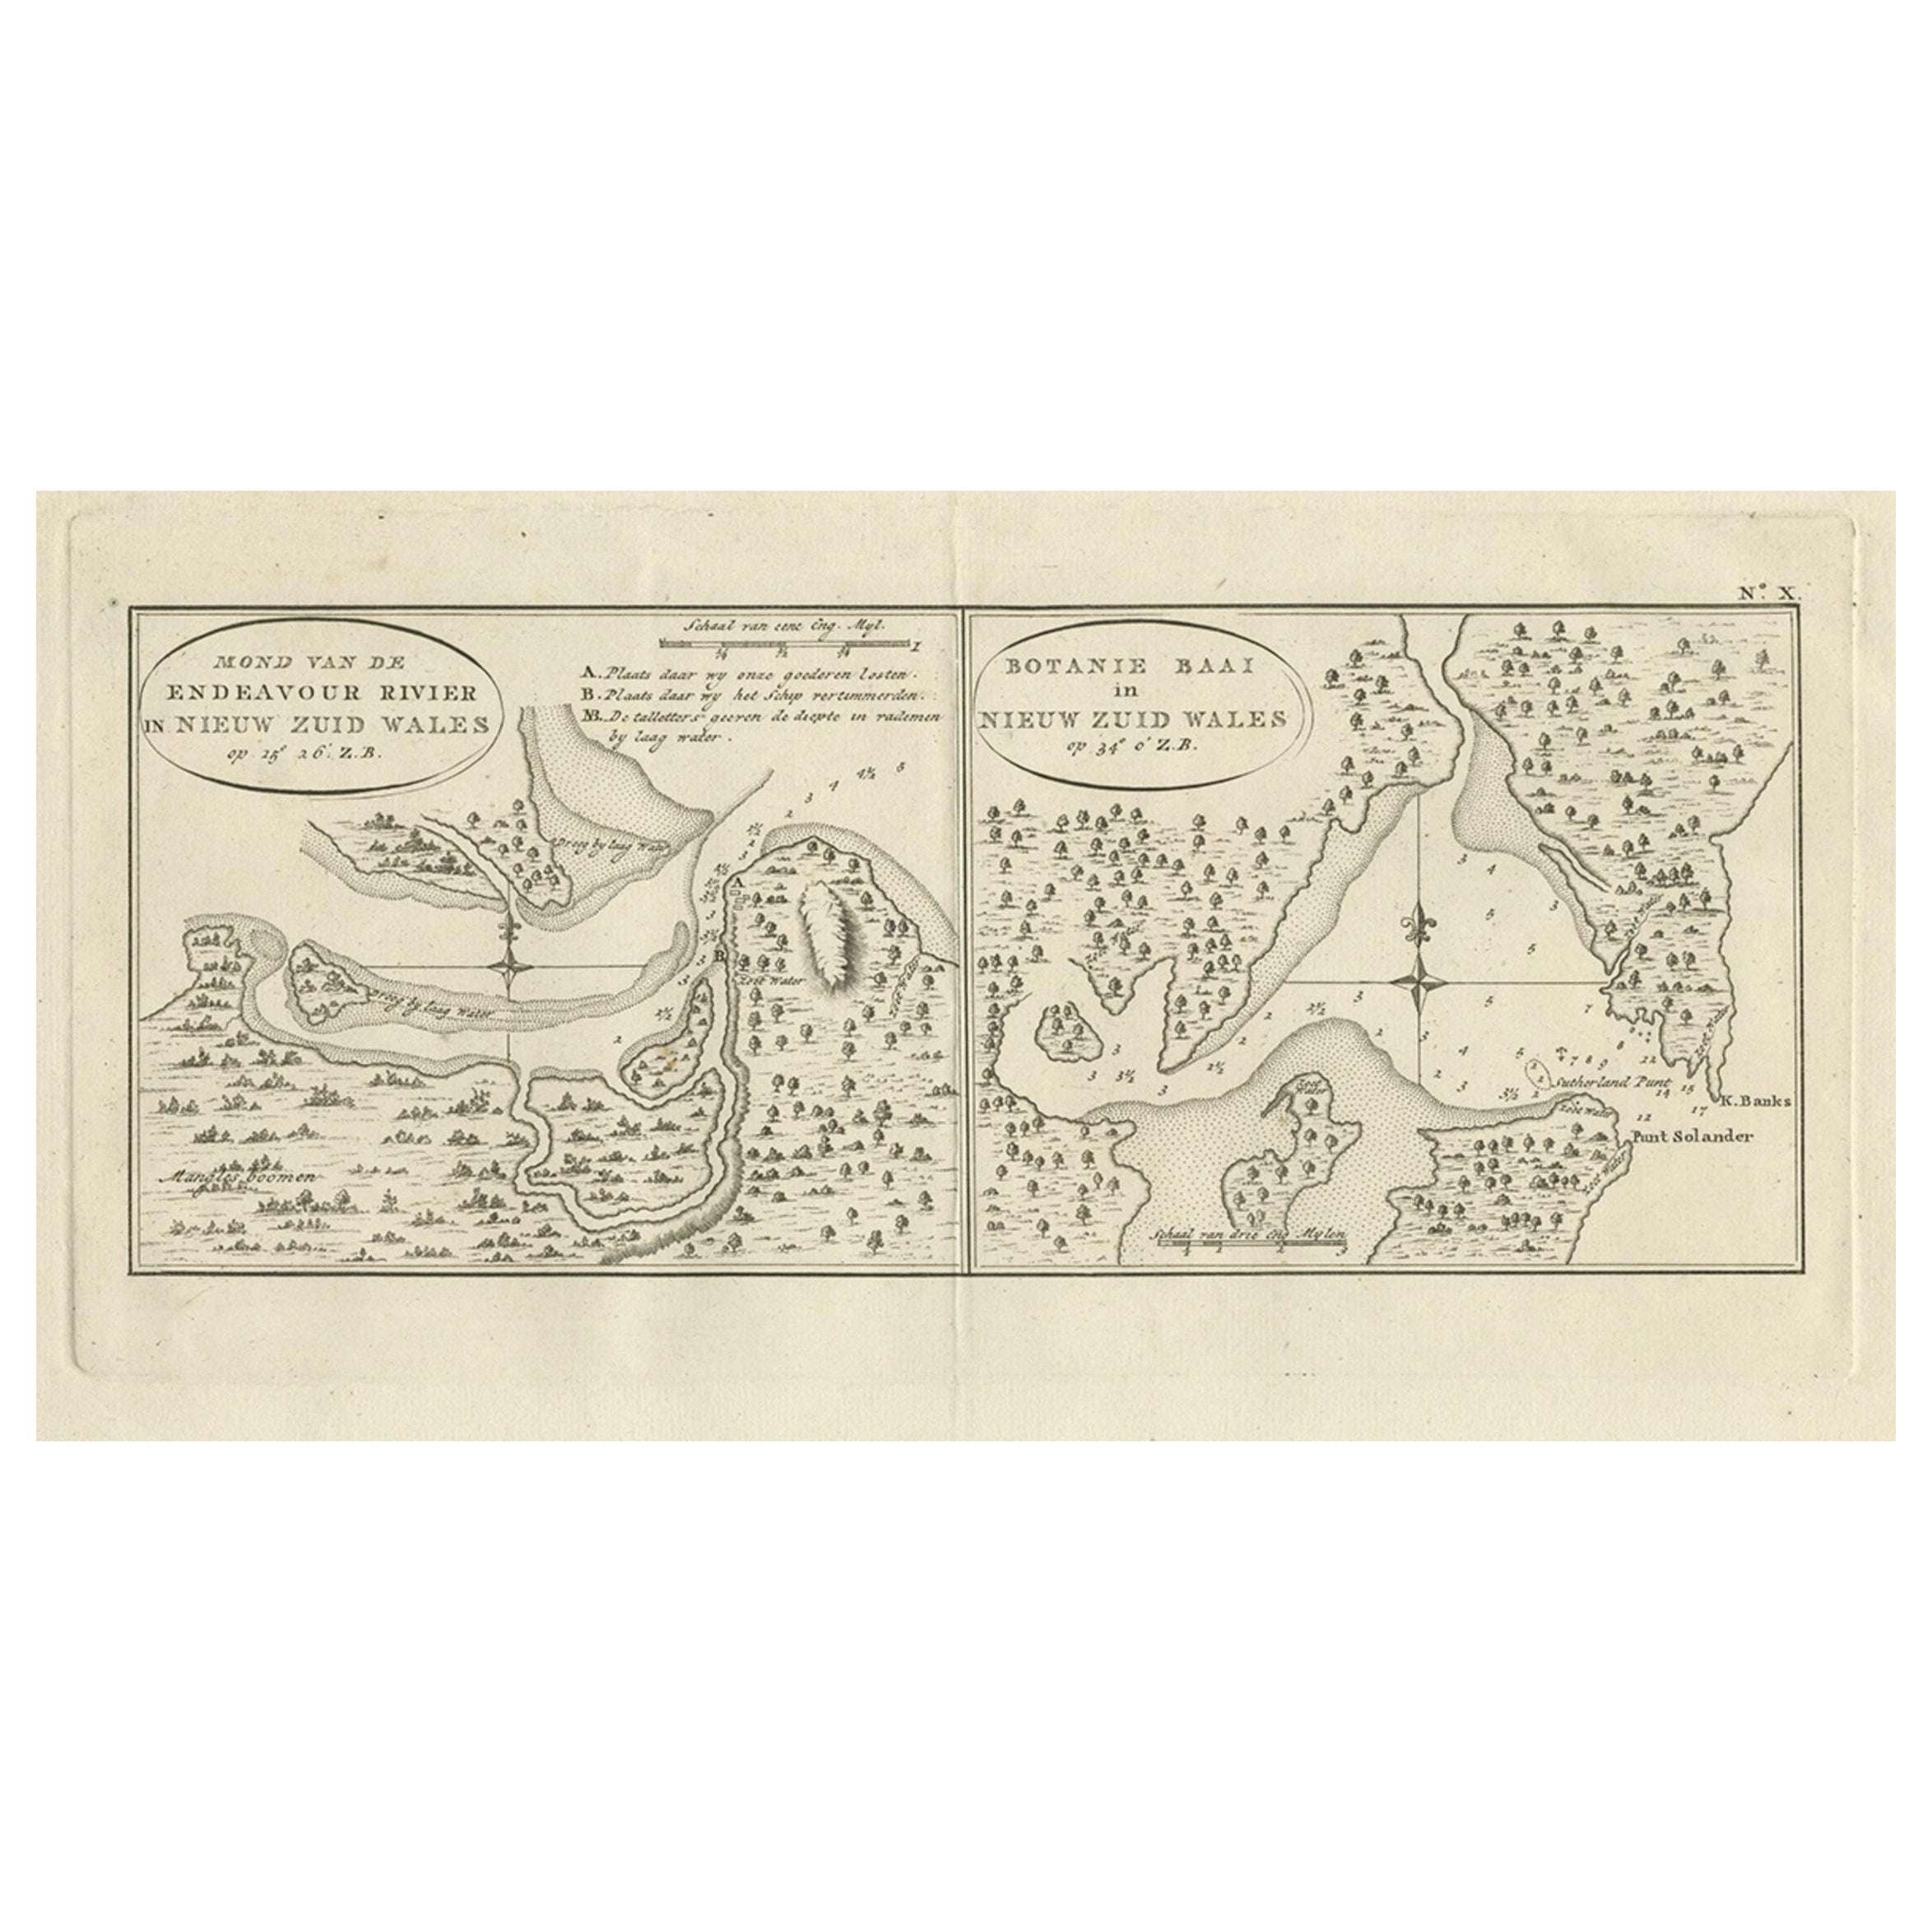 Antike Karte des Endeavour River und der Botany Bay, New South Wales, Australien, 1803